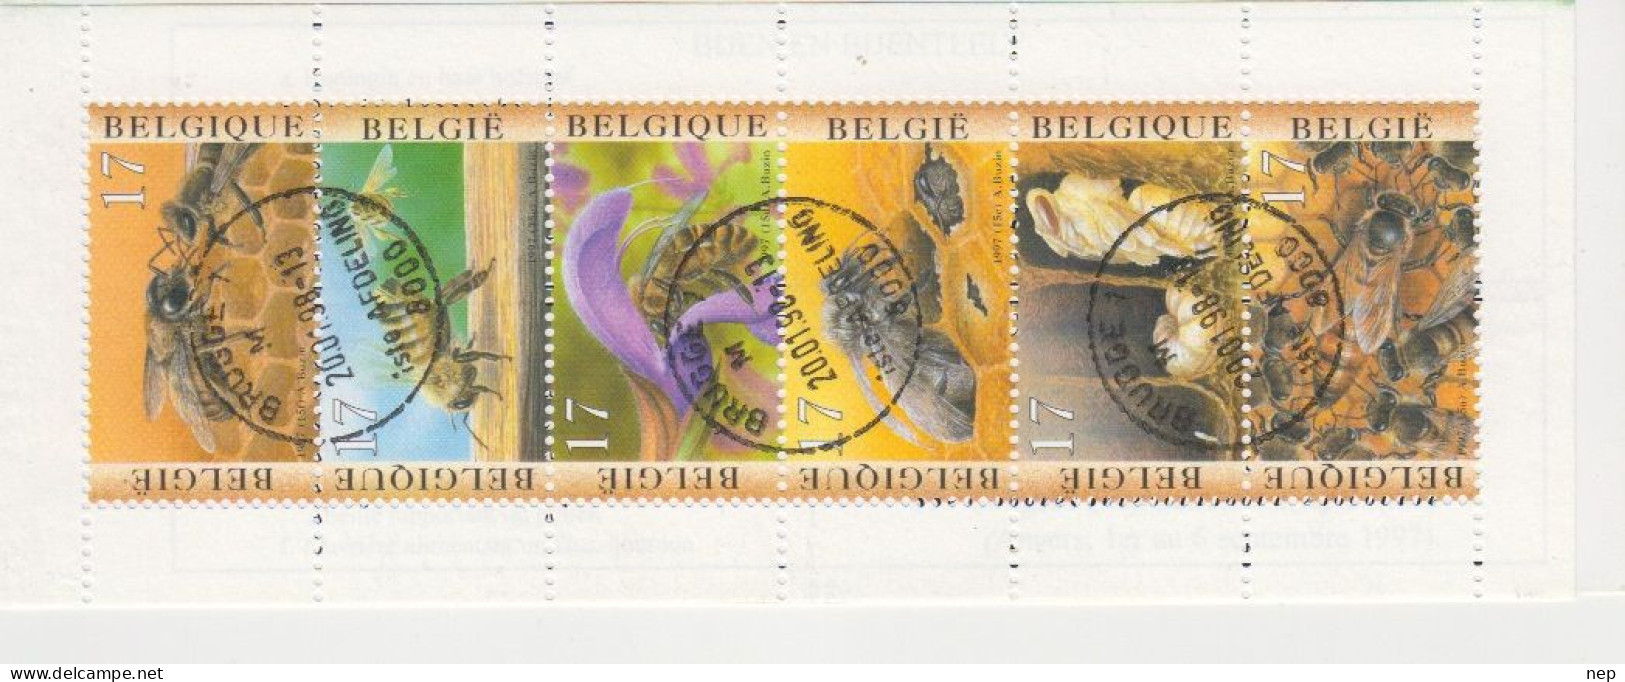 BELGIË - OPB - 1997 - B 28 (BRUGGE) - Gest/Obl/Us - 1953-2006 Modernos [B]